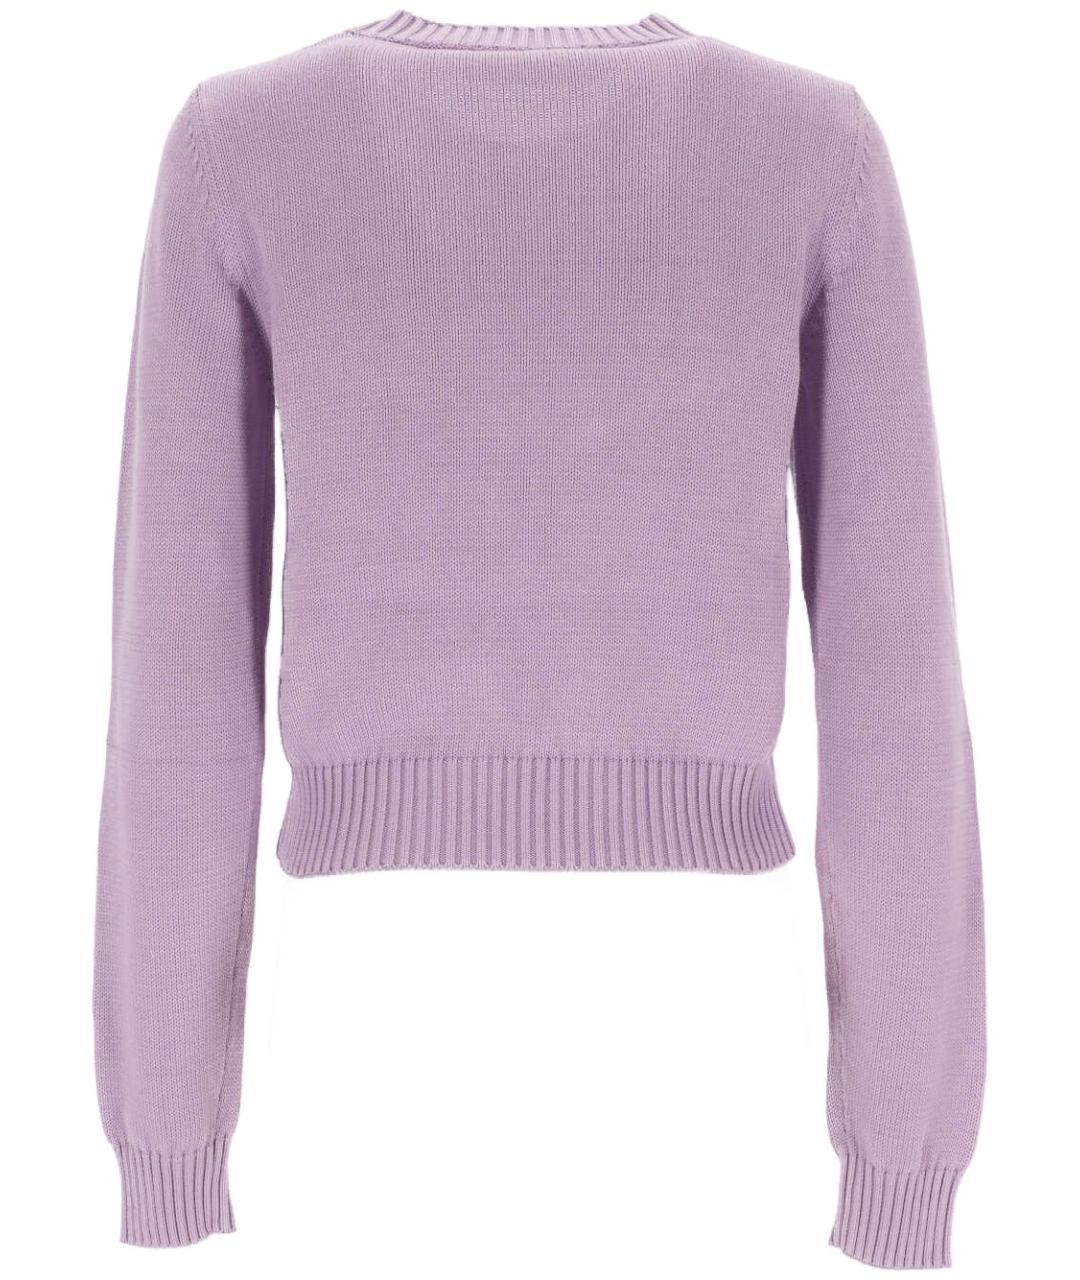 PALM ANGELS Фиолетовый хлопковый джемпер / свитер, фото 3